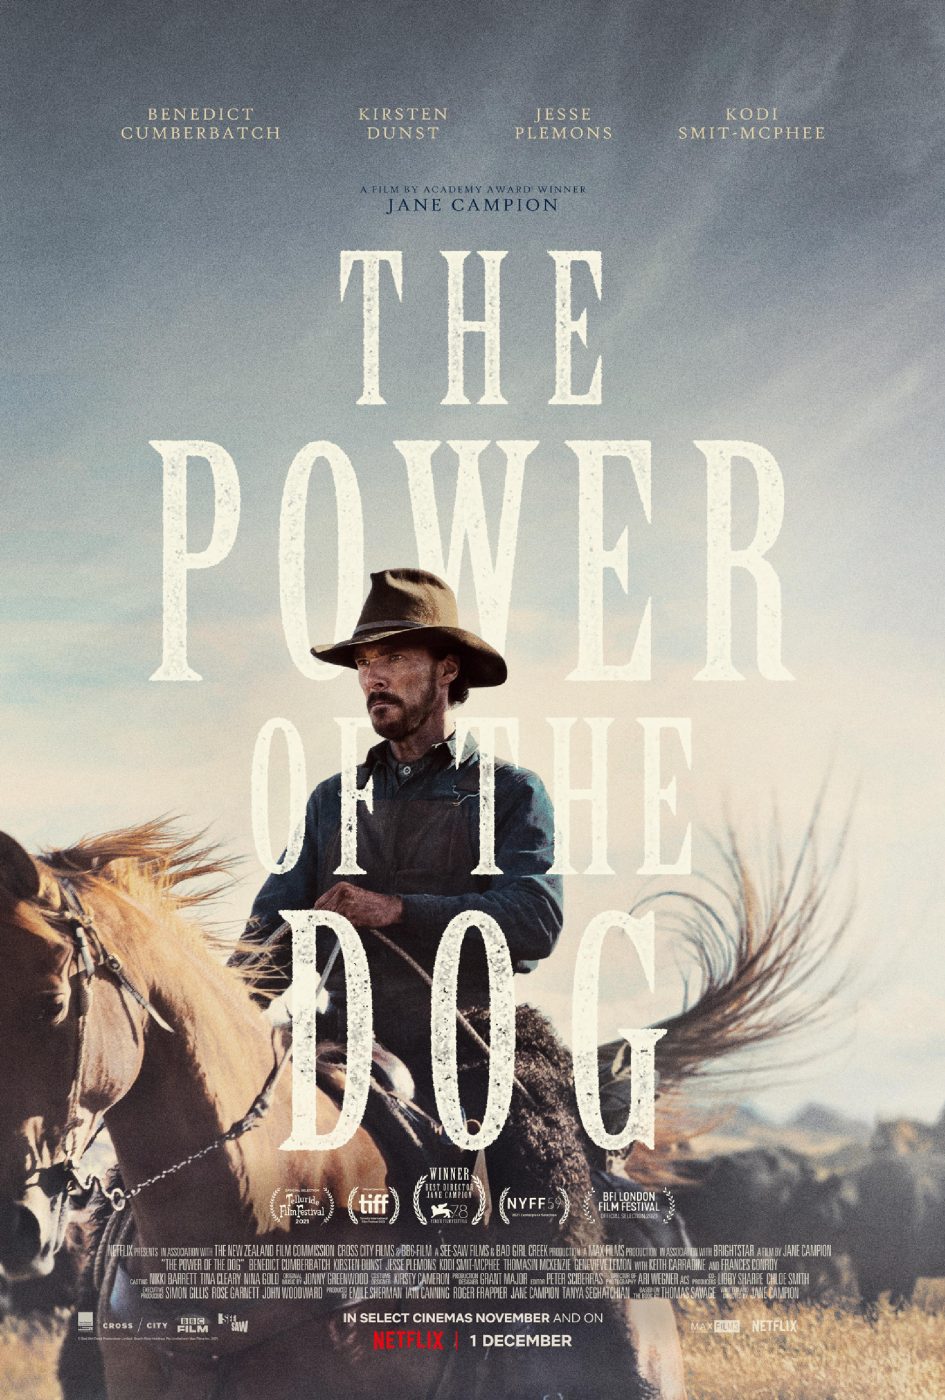 Il trionfo di Jane Campion con 'The power of the dog'